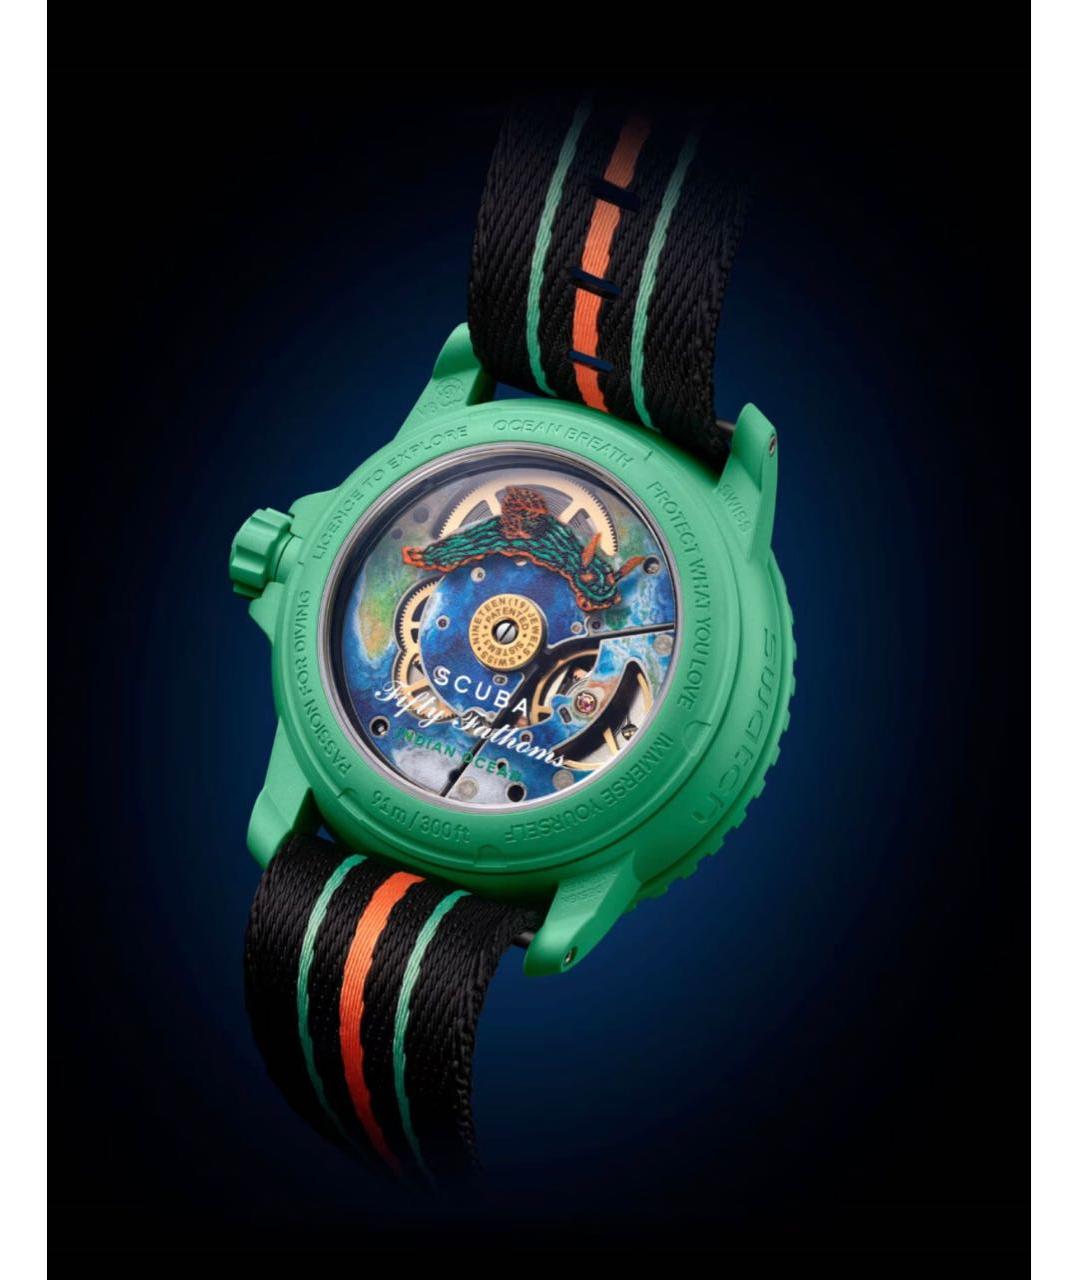 Blancpain Зеленые керамические часы, фото 2